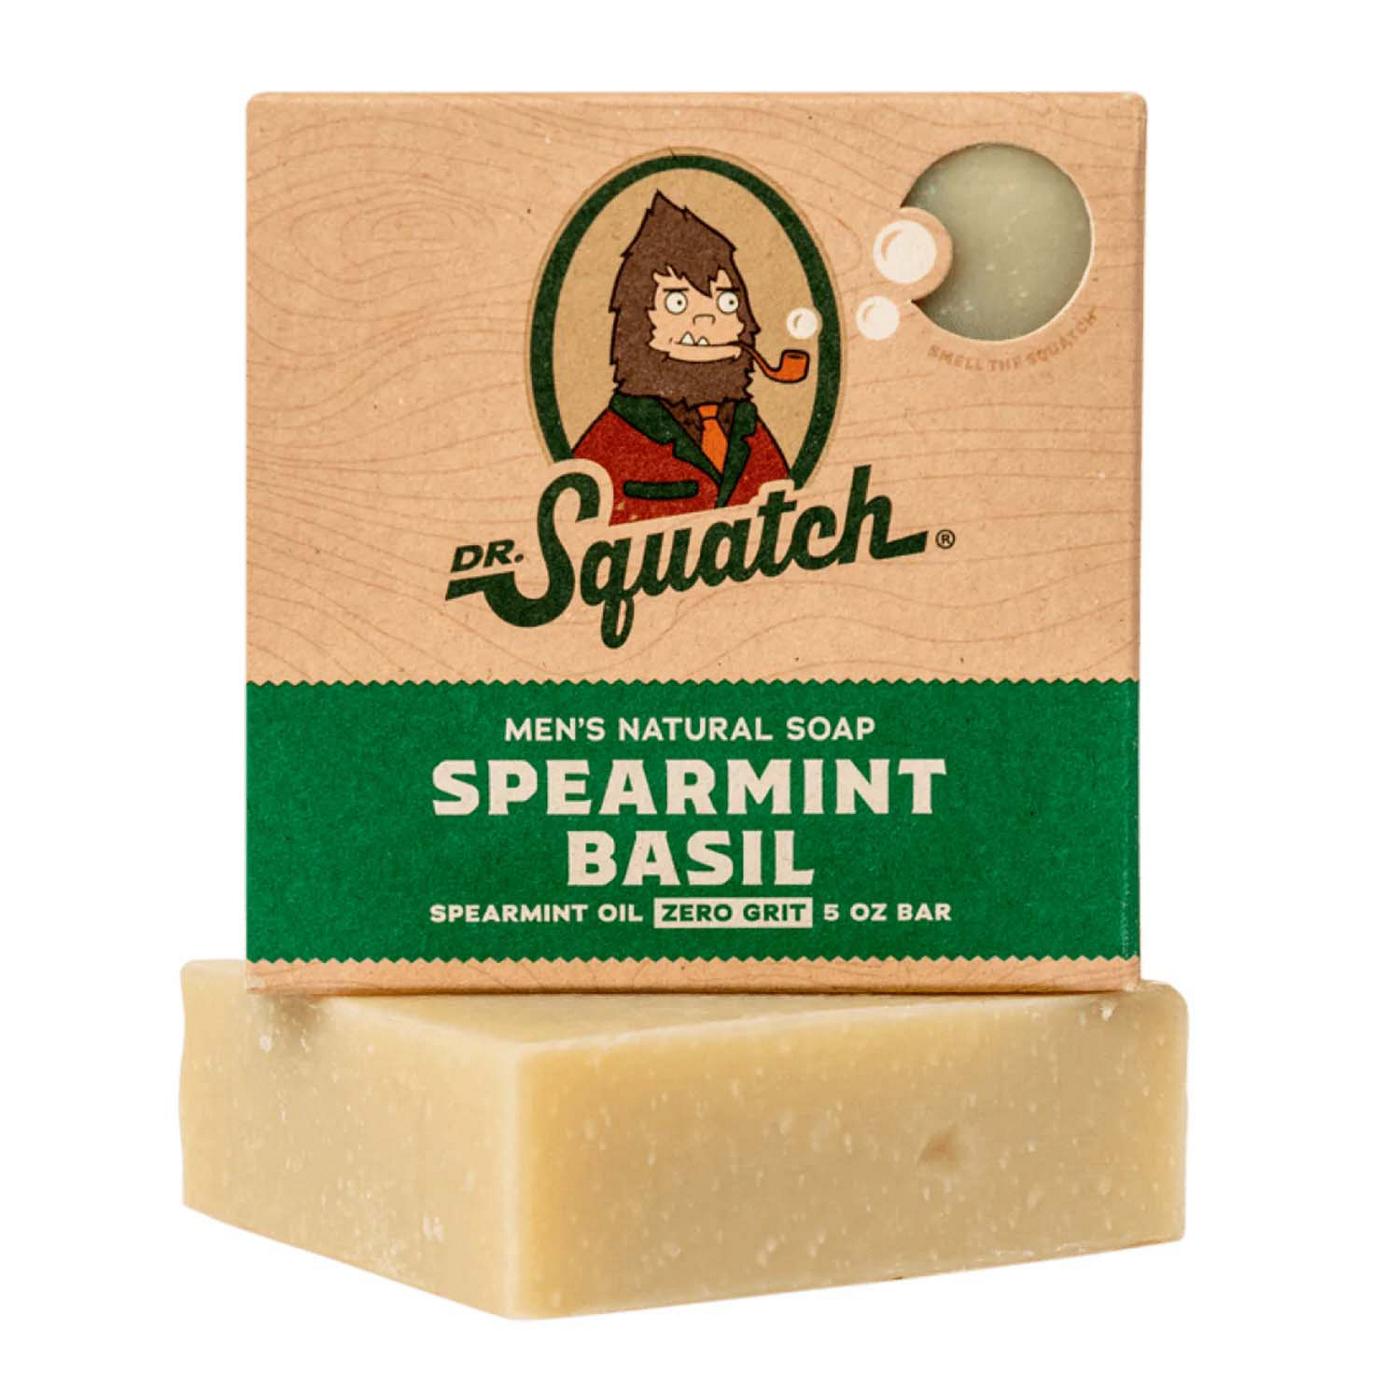 Dr. Squatch Men's Natural Soap - Spearmint Basil; image 2 of 3